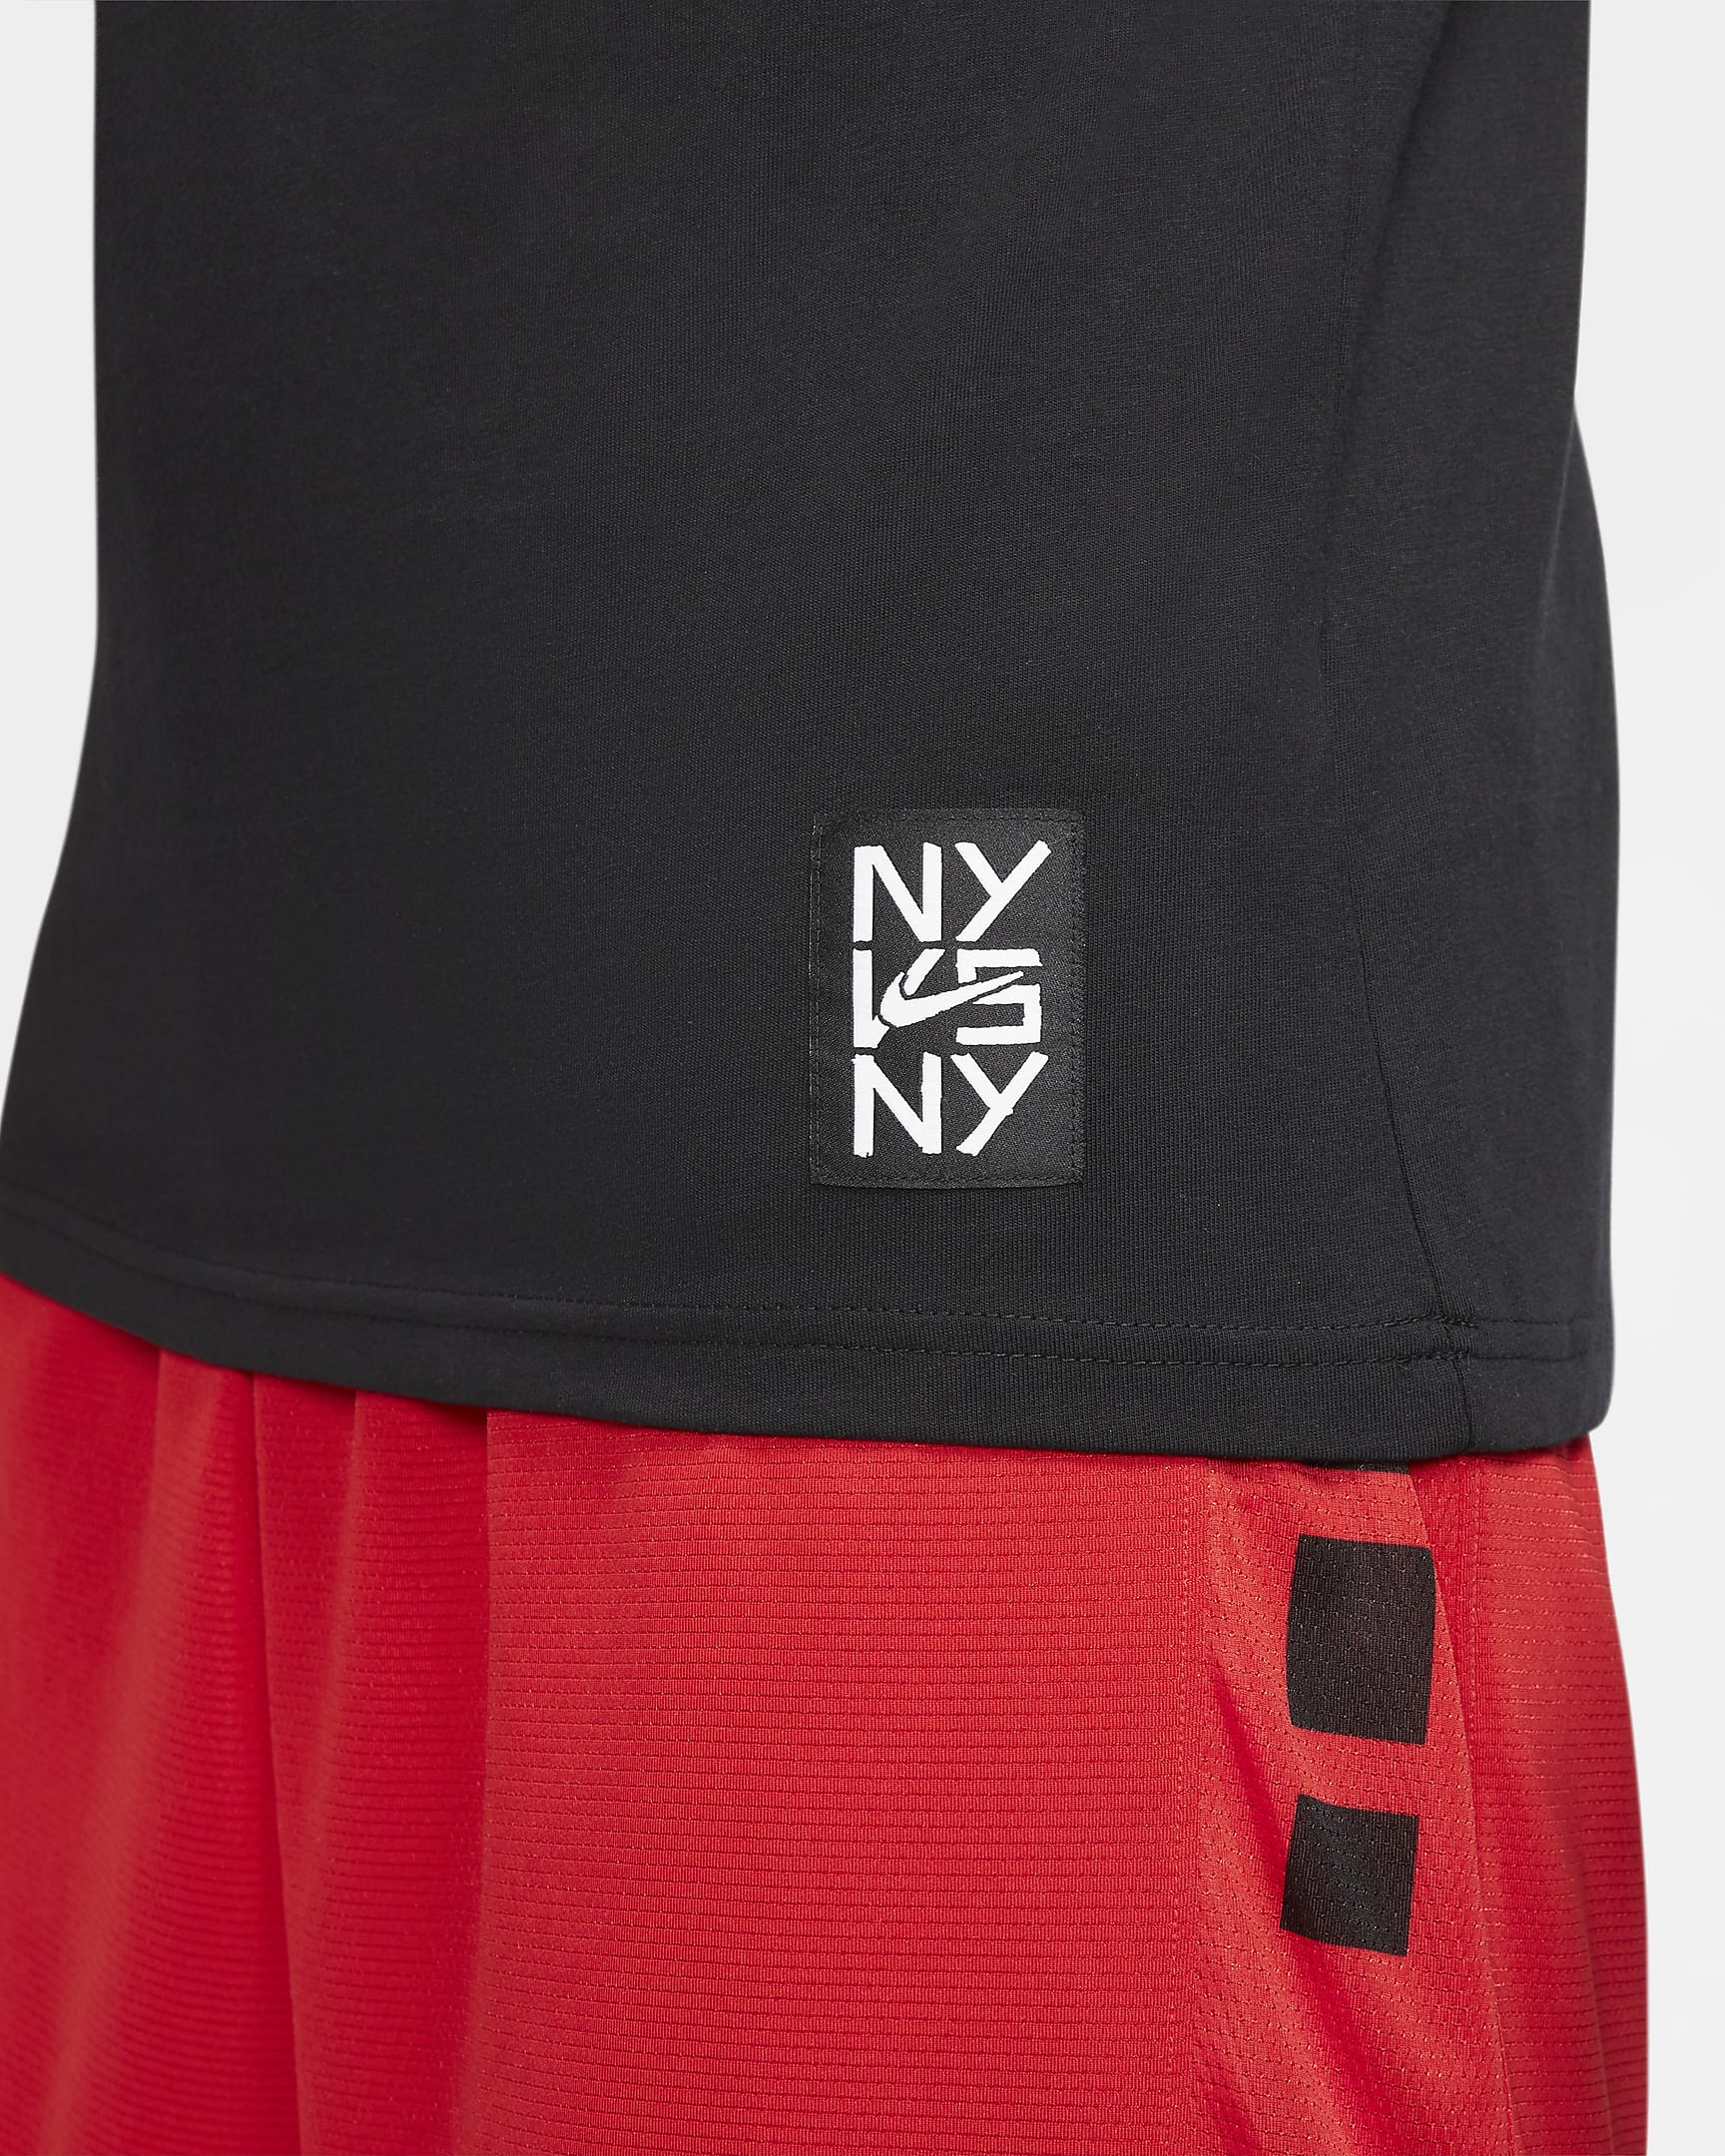 ny-vs-ny-lincoln-park-mens-basketball-t-shirt-kL1qnL-2.png